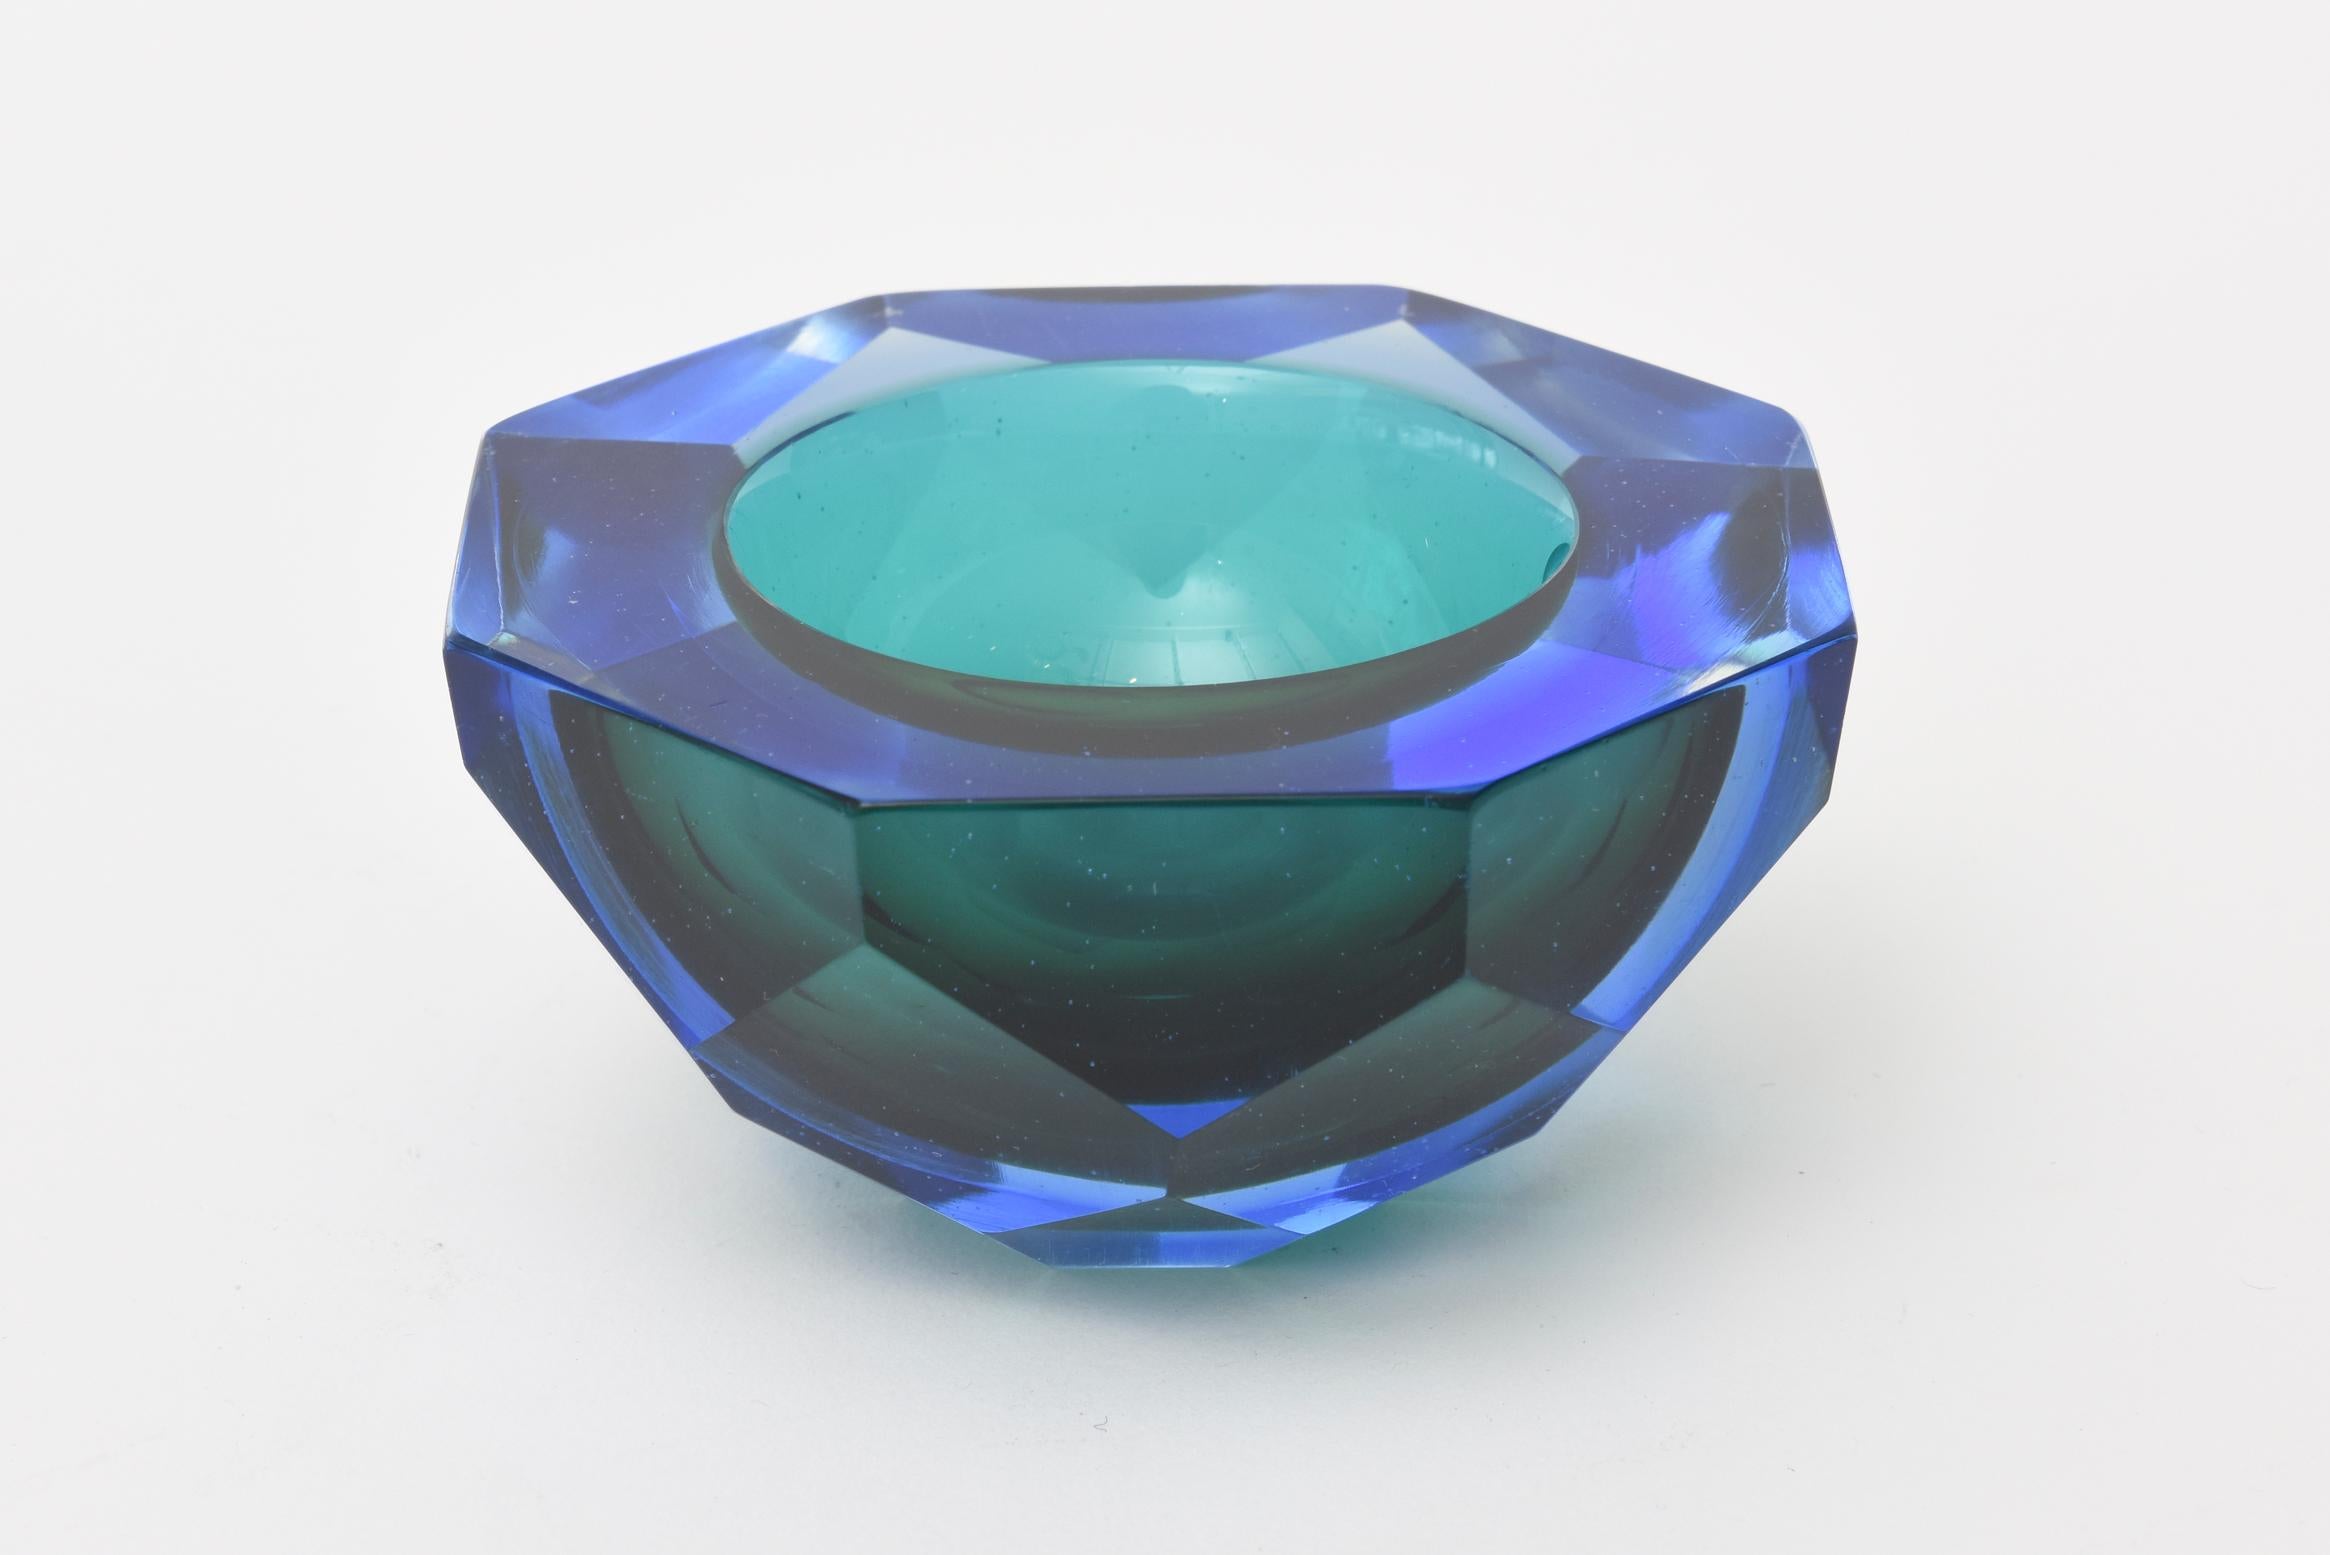 Diese wunderschöne italienische Murano Diamant facettiert sommerso Juwel getönten Glasschale hat üppige Töne von satten Blautönen und teal grün Türkis. 
Es stammt aus den 1970er Jahren. Es hat eine flach geschliffene:: polierte Oberseite und